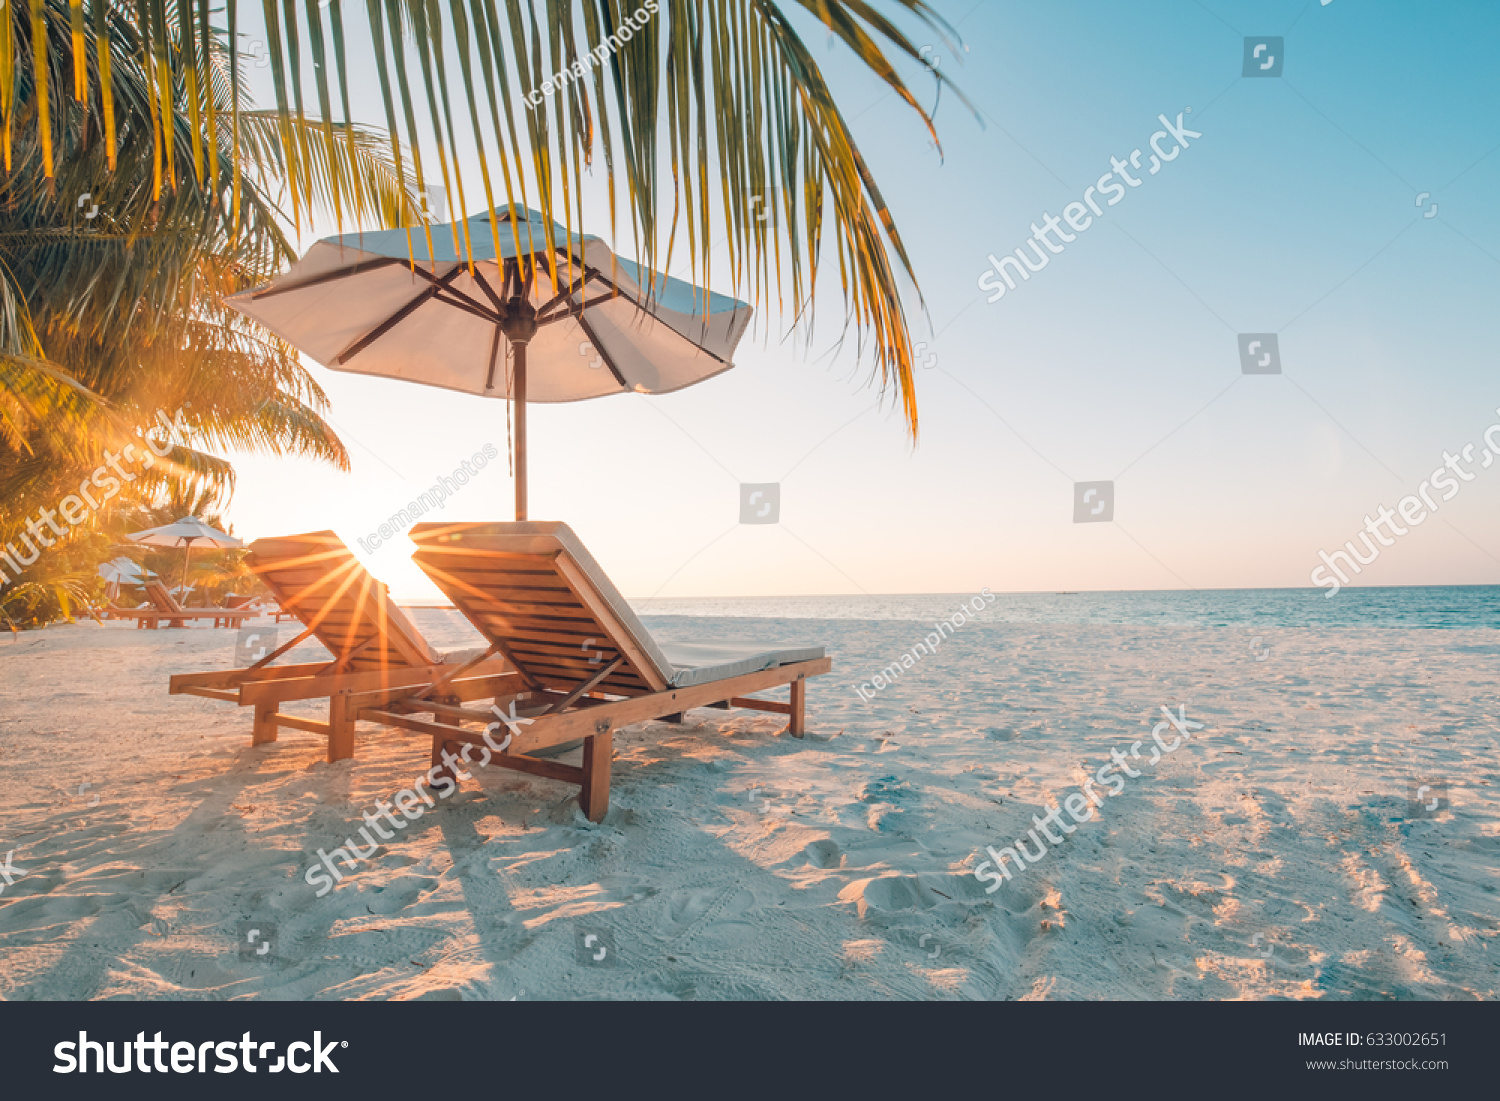 Schöner Strand. Stühle am Sandstrand in der Nähe des Meeres. Sommerurlaub und Urlaubskonzept für Tourismus. Inspirierende tropische Landschaft #633002651